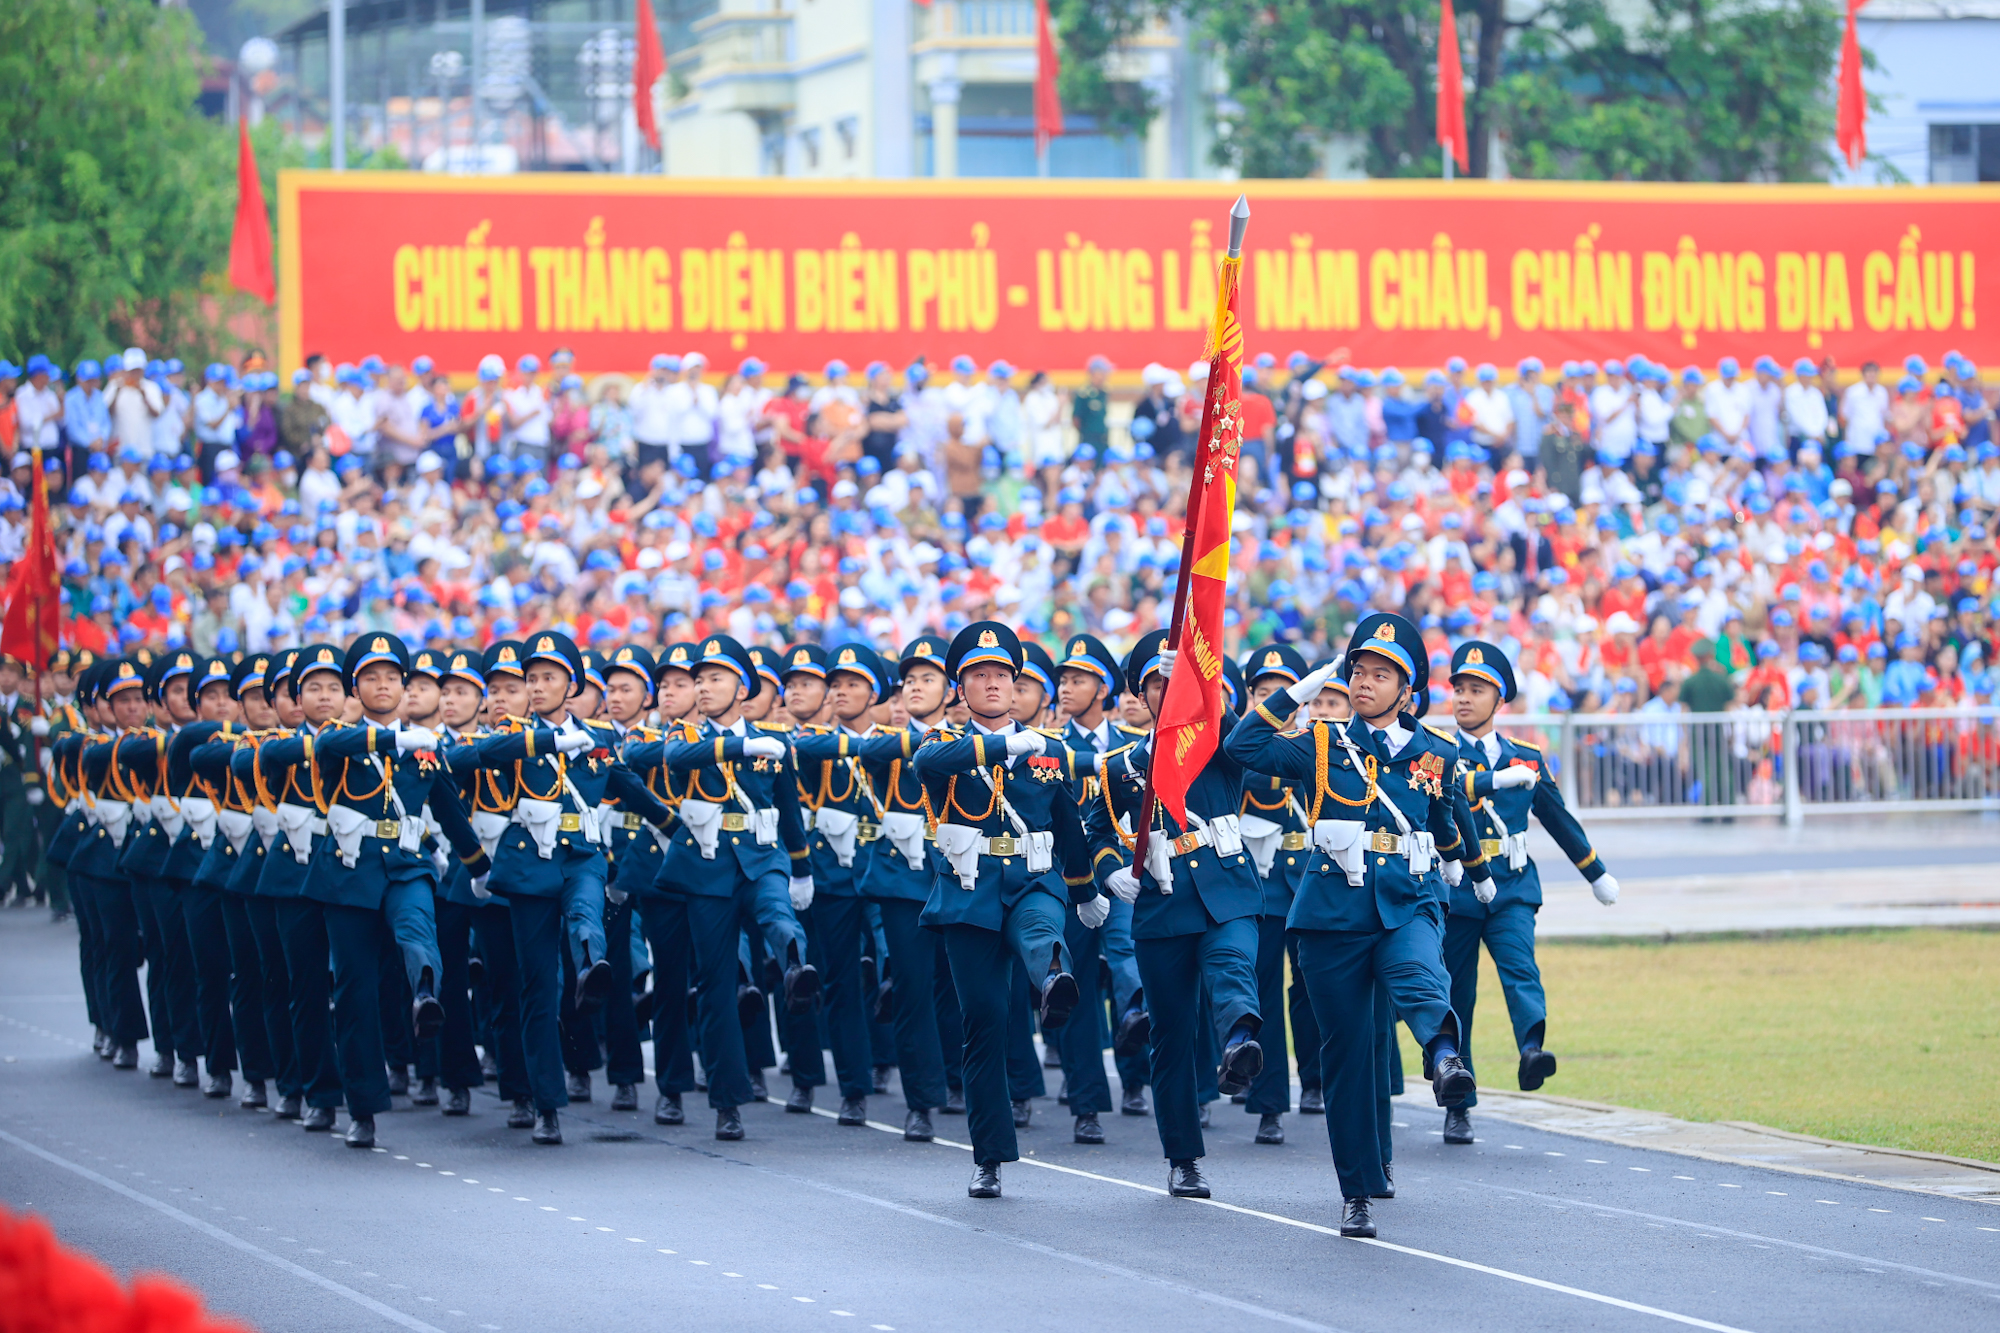 Lễ diễu binh oai hùng và đầy tự hào của 12.000 người - những hình ảnh đi vào lịch sử ở Điện Biên Phủ- Ảnh 16.